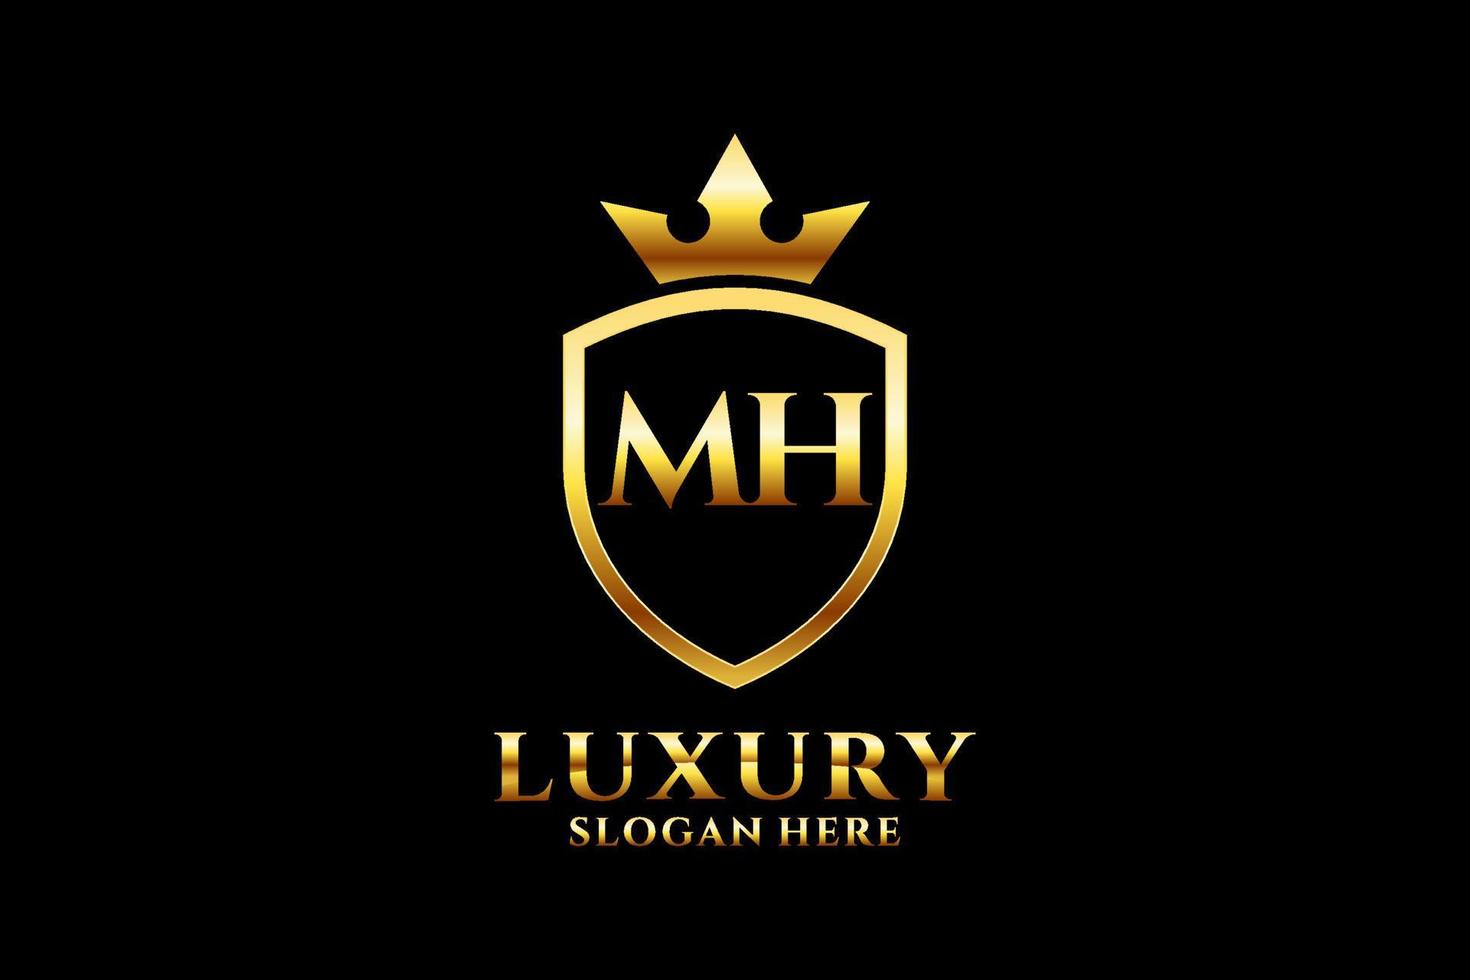 logo monogramme de luxe élégant initial mh ou modèle de badge avec volutes et couronne royale - parfait pour les projets de marque de luxe vecteur